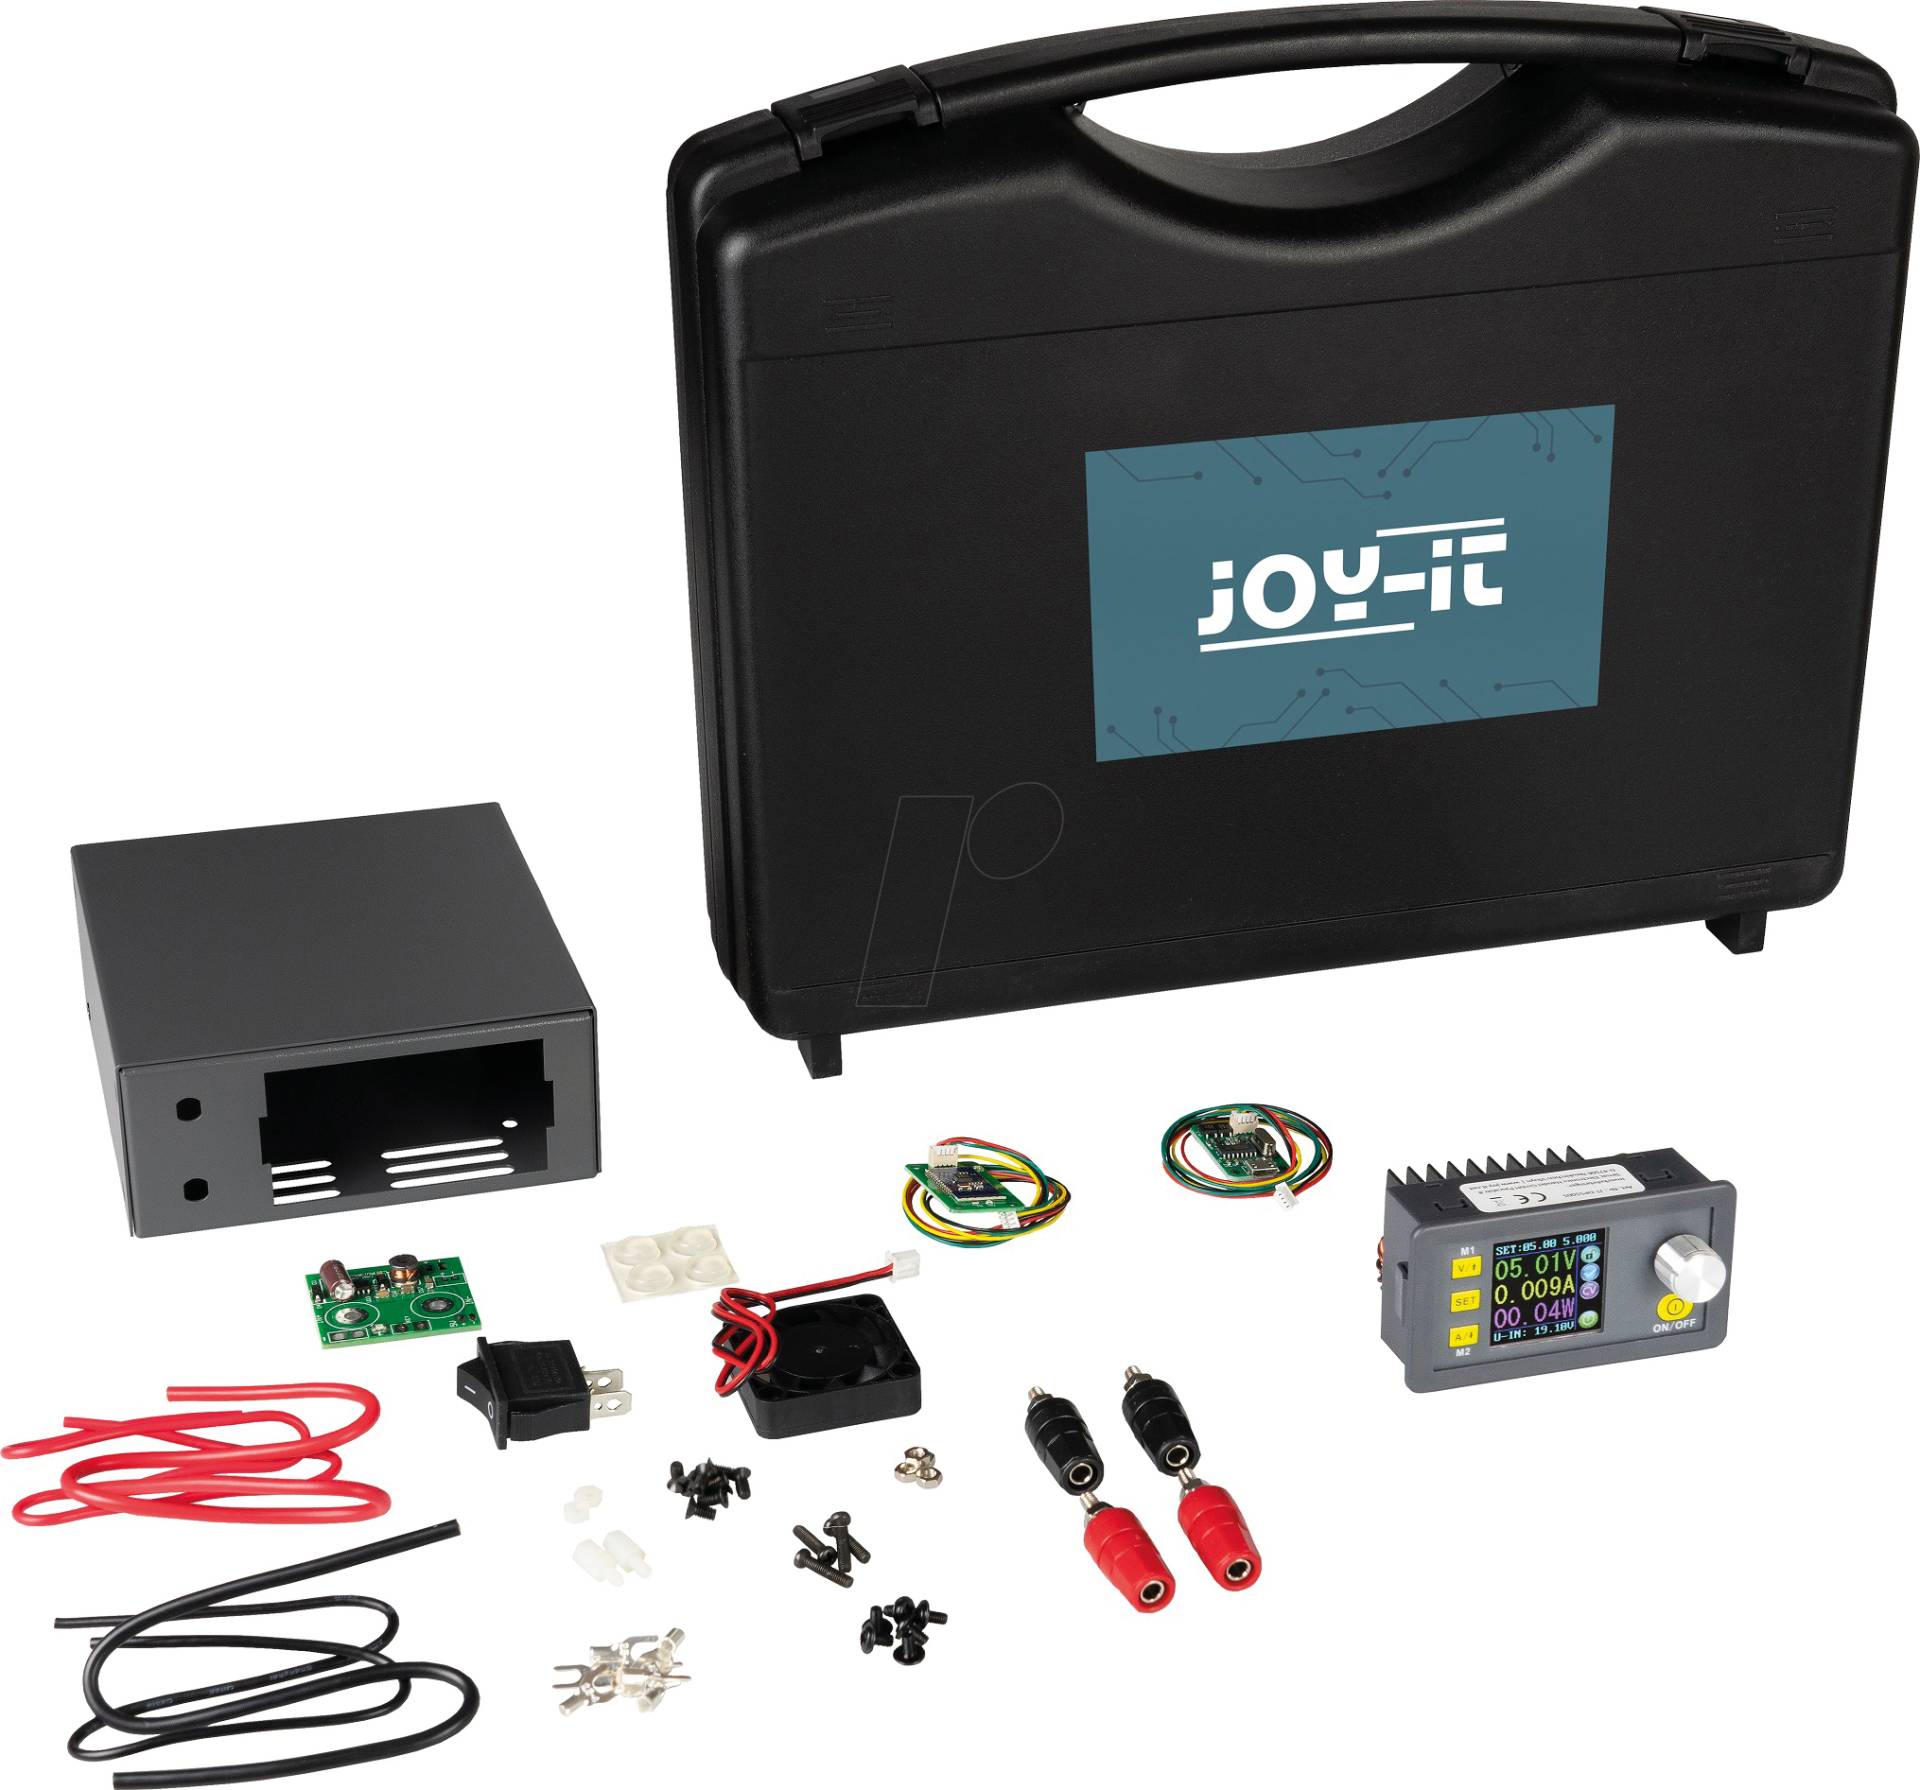 JOY-IT DPS 5005S - DPS Labornetzgerät, 0 - 50 V, 0 - 5 A, Set von JOY-IT